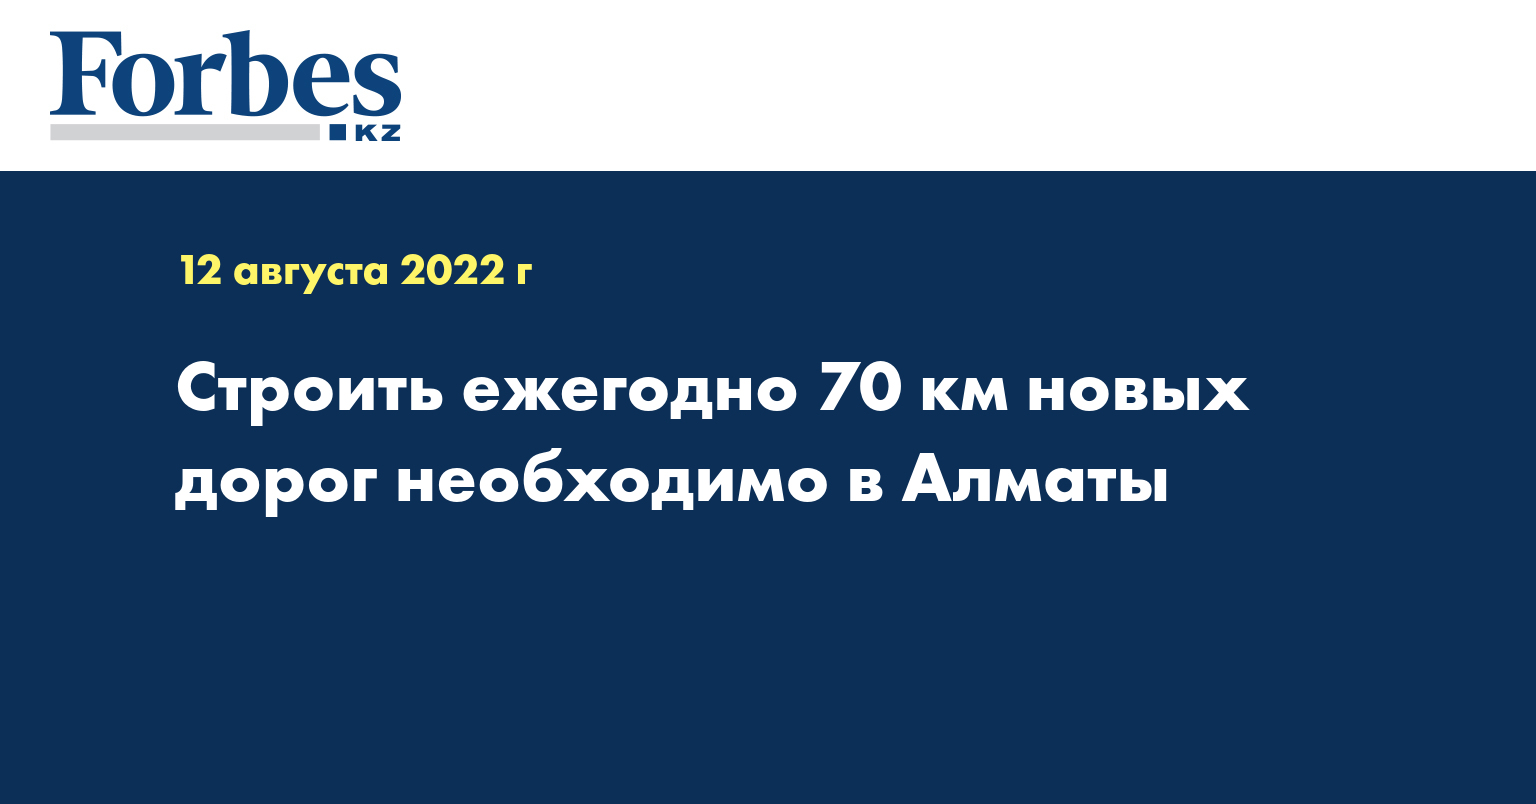 Строить ежегодно 70 км новых дорог необходимо в Алматы